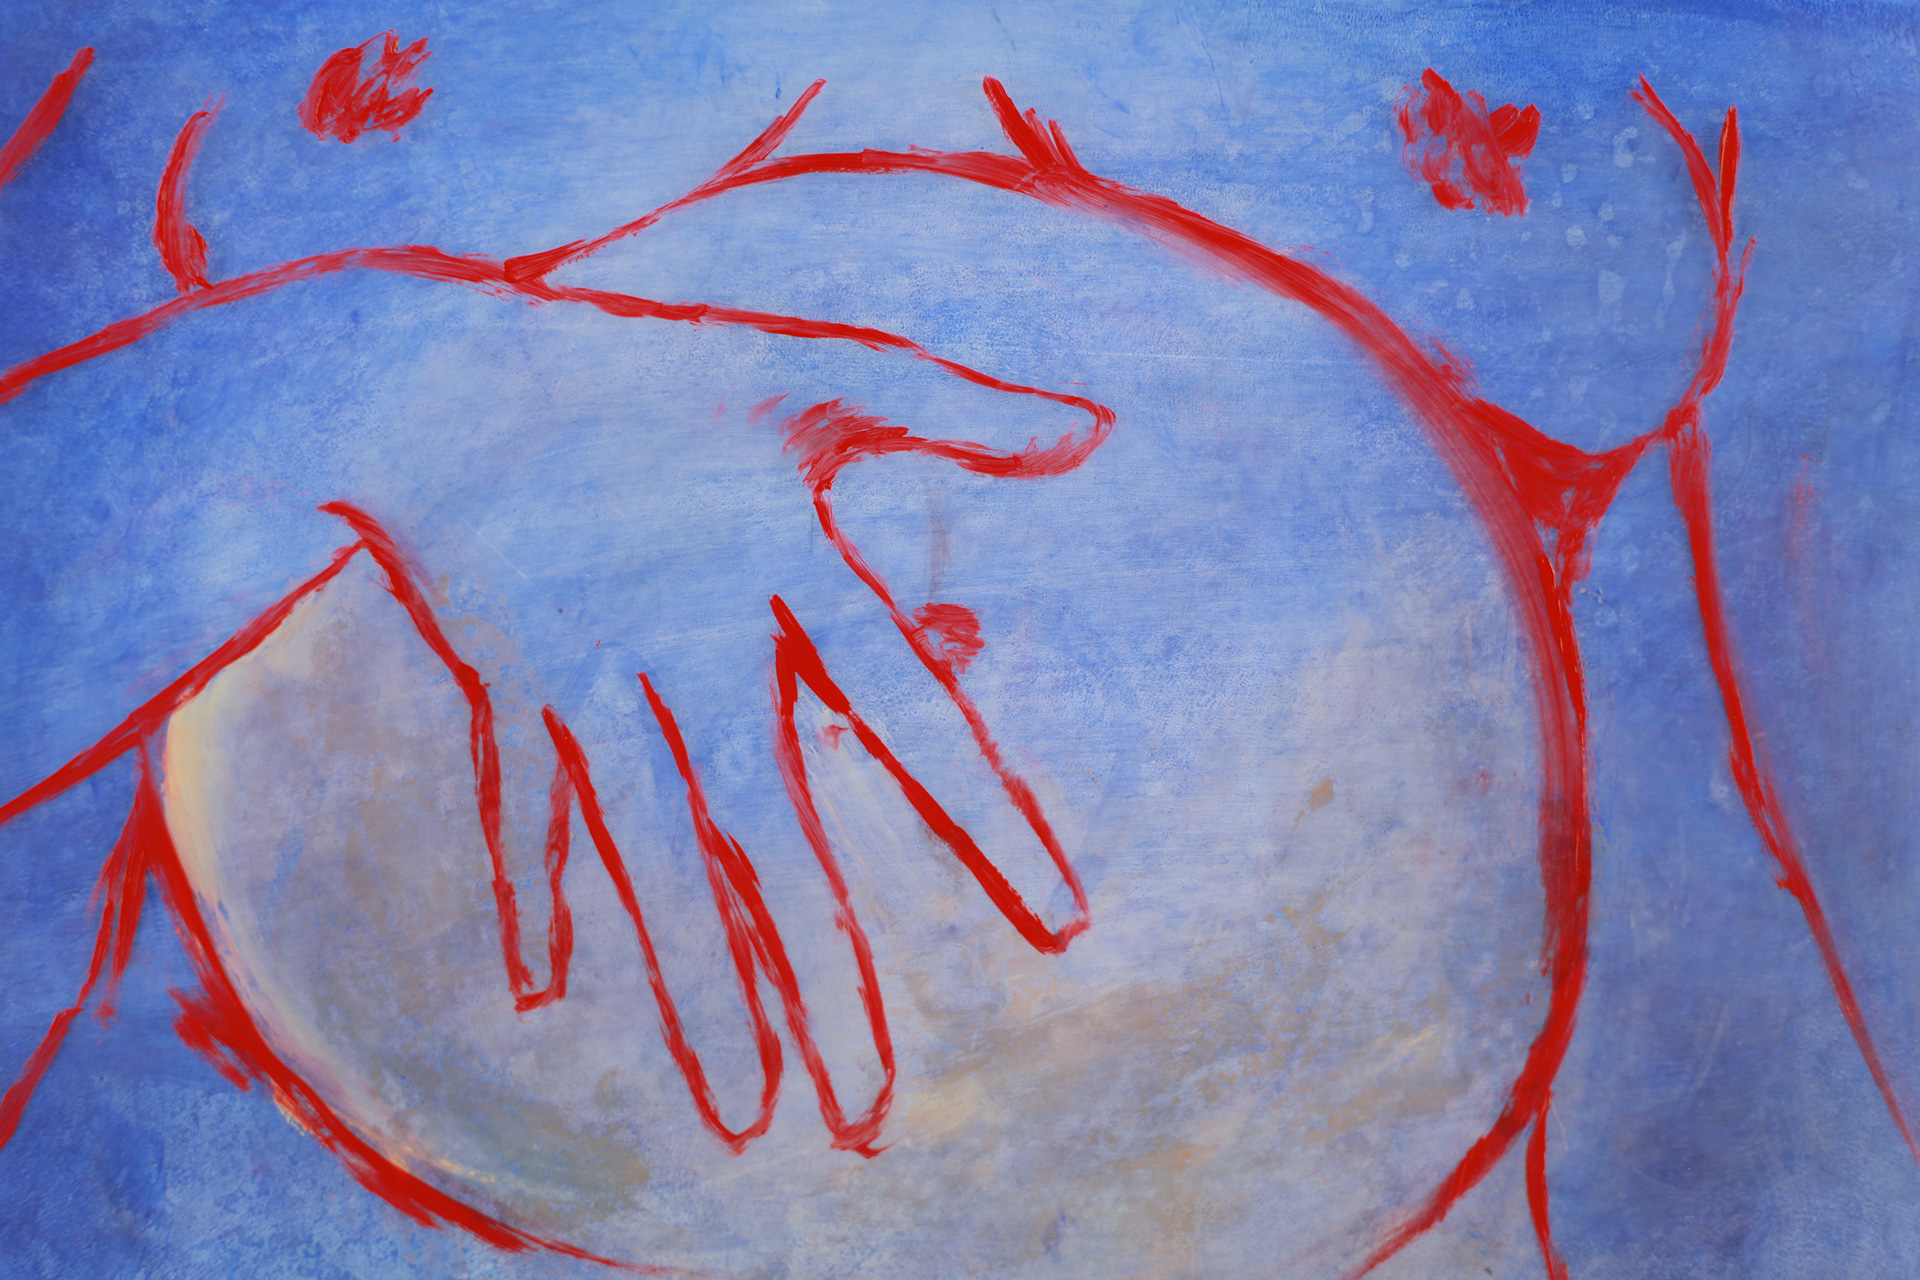 dessin d'une main rouge sur un ventre de femme enceinte